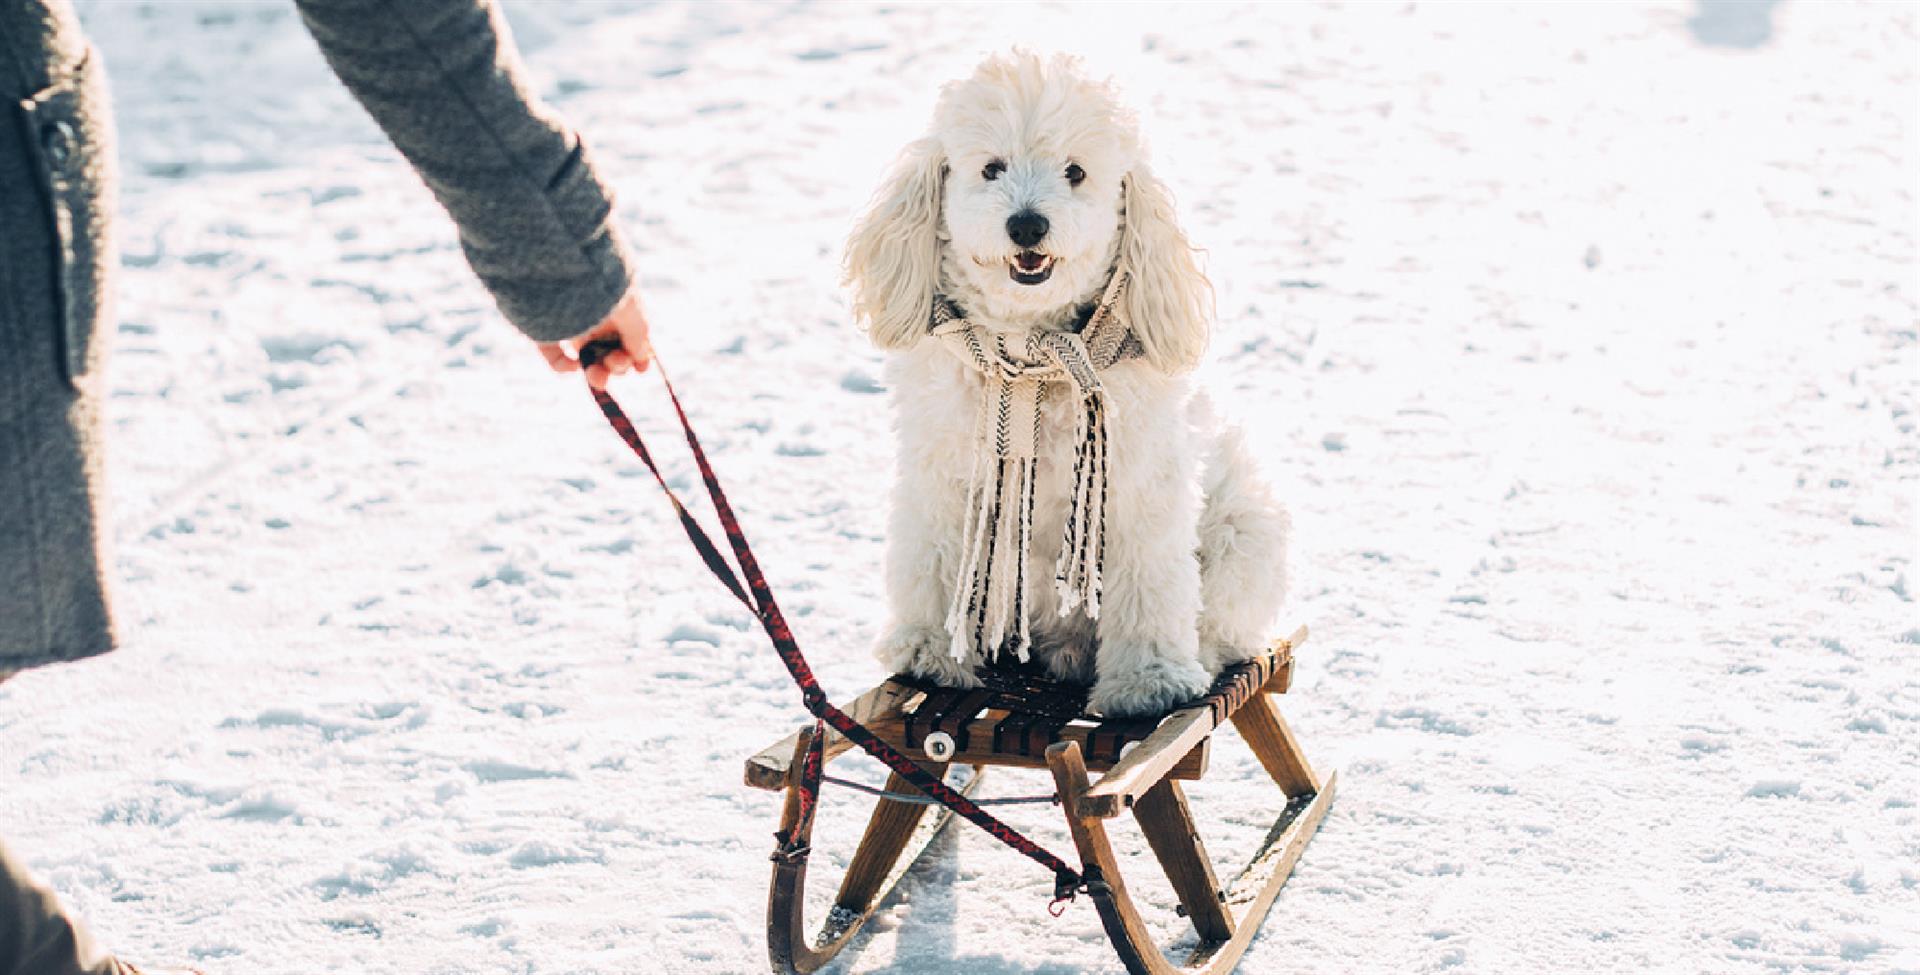 A cute dog enjoying a ride on a sled